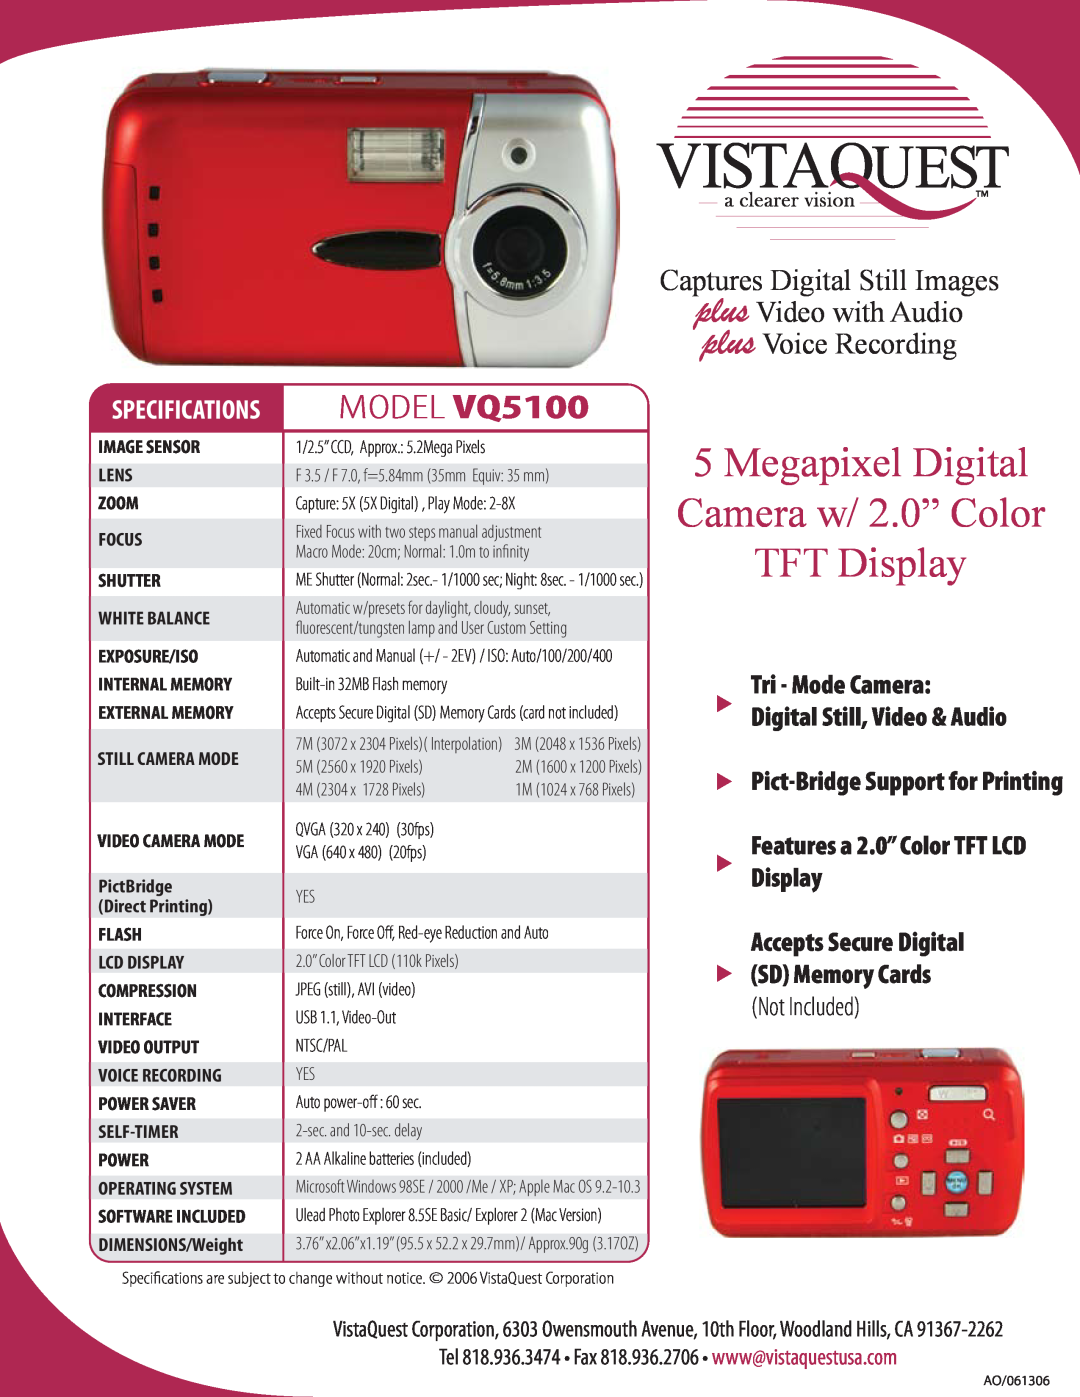 VistaQuest specifications Megapixel Digital Camera w/ 2.0” Color TFT Display, MODEL VQ5100, Tri - Mode Camera 